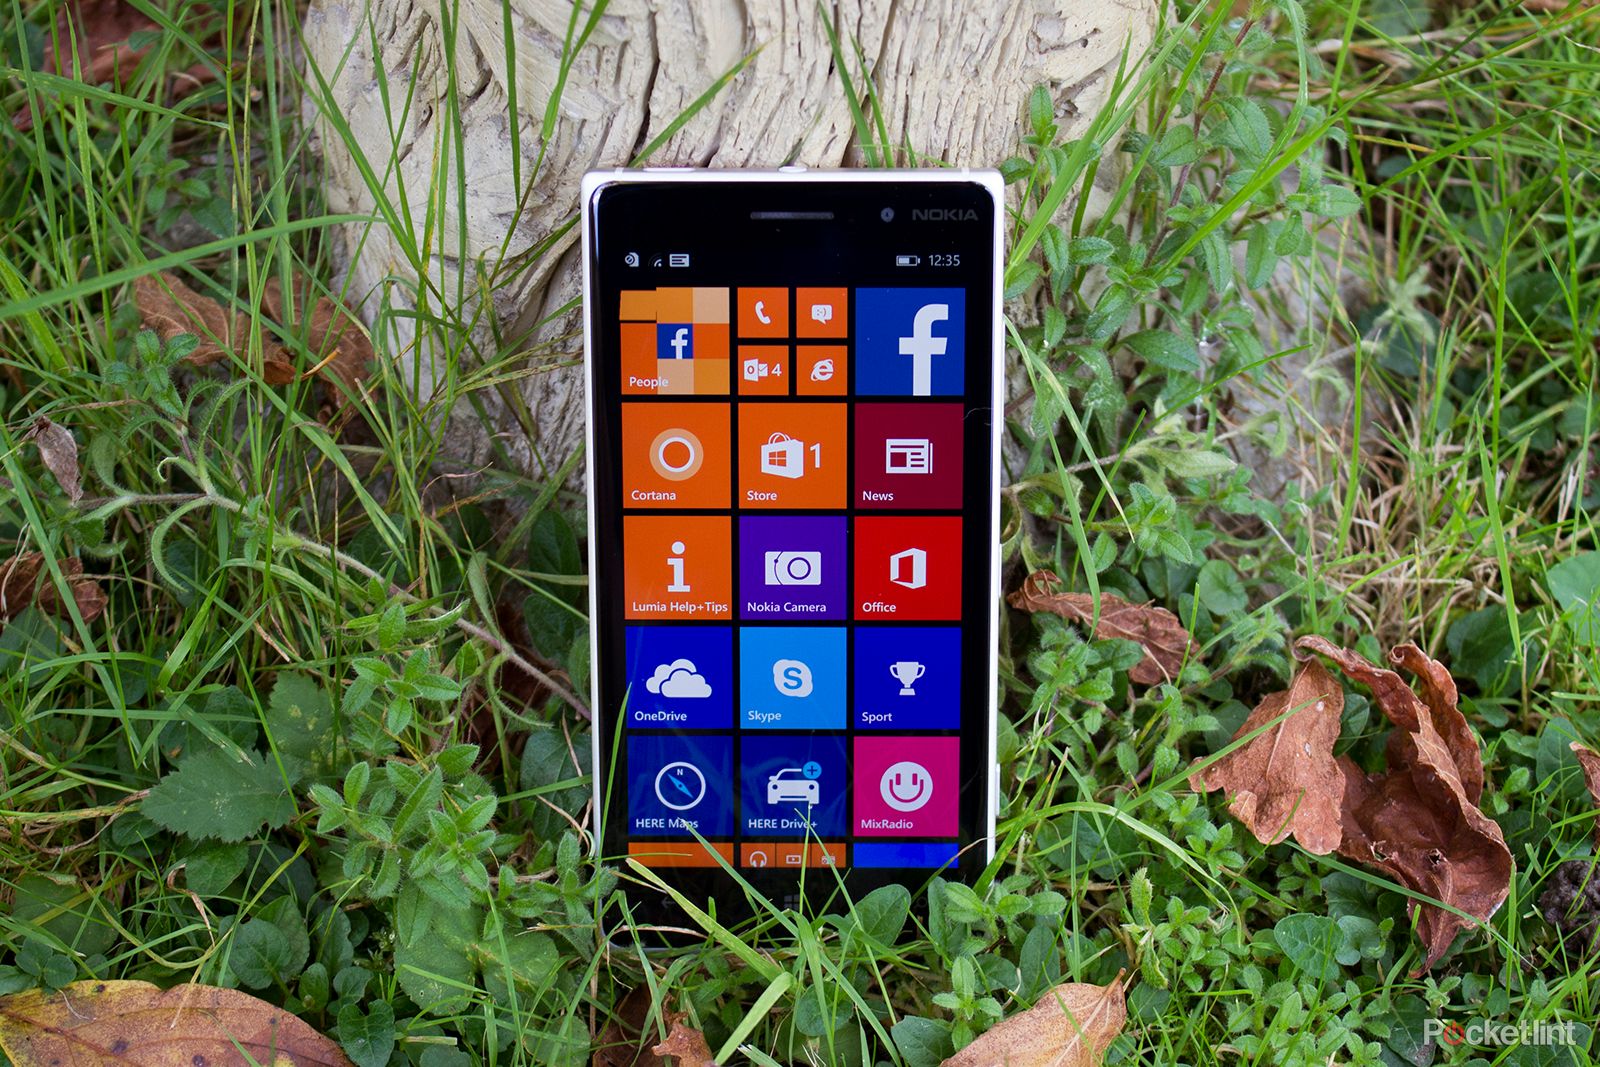 Windows Phone is dead Microsoft admits in tweet image 1